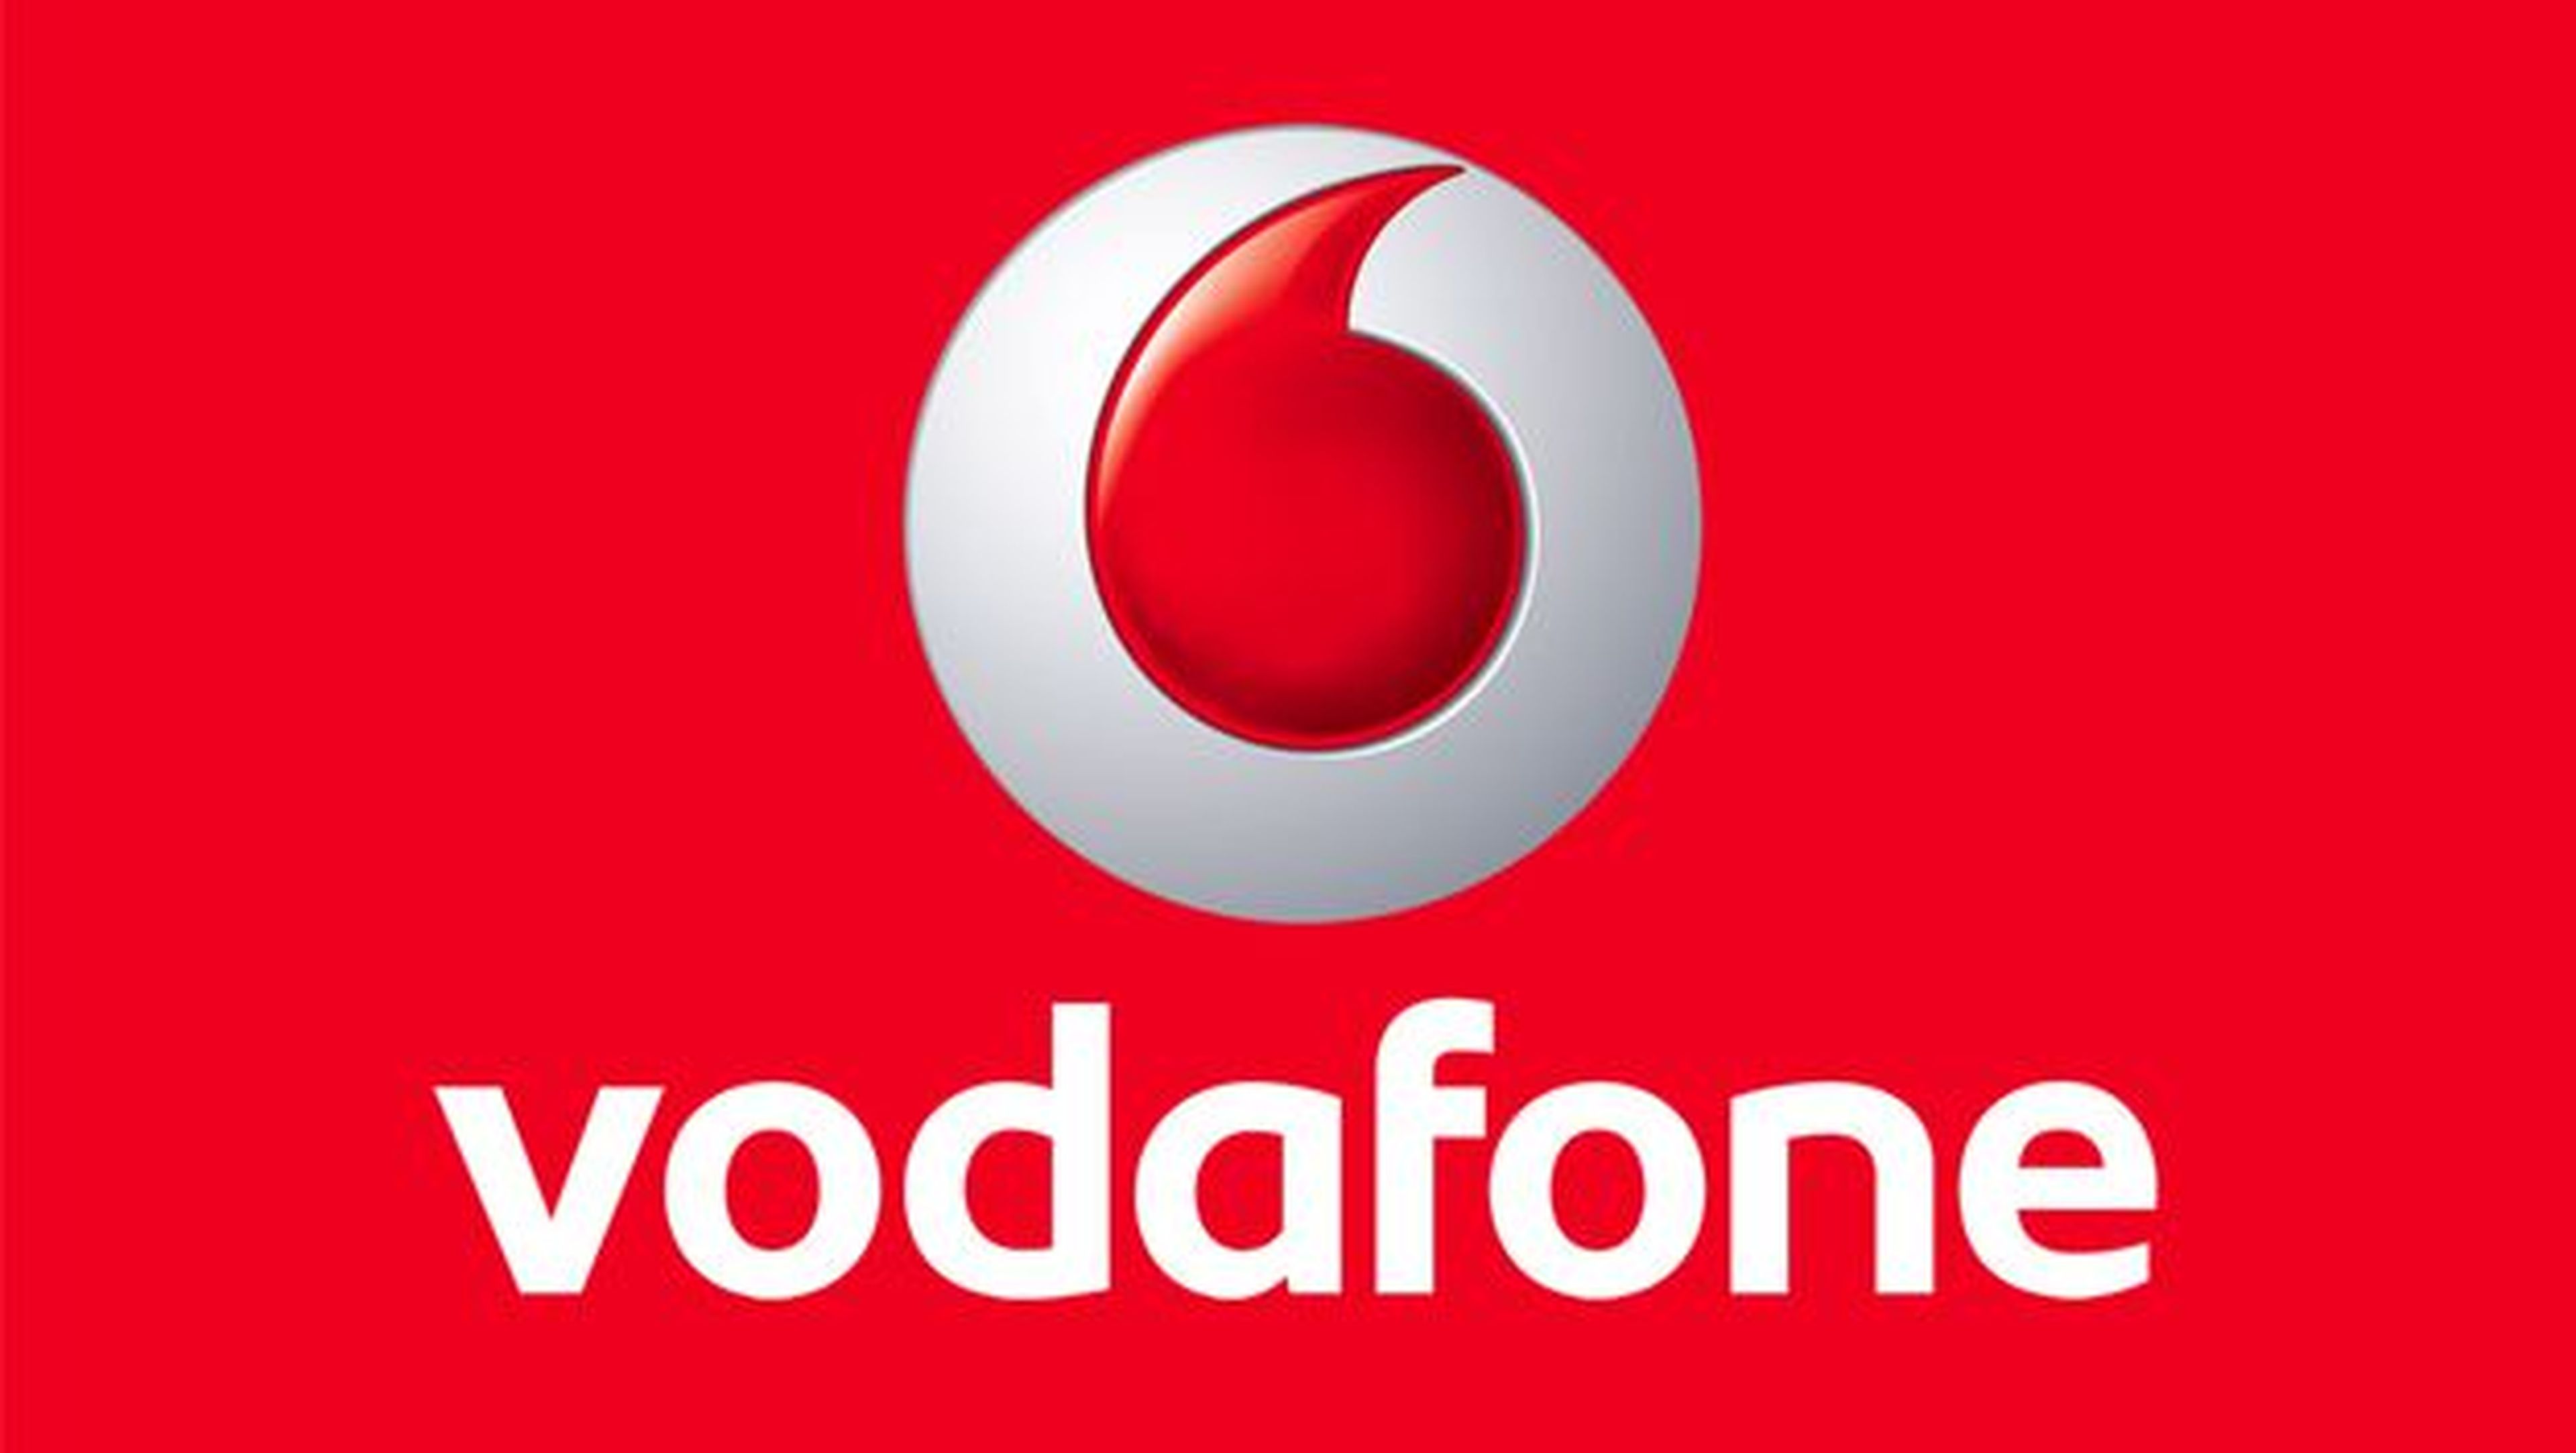 Vodafone elimina el roaming y renueva sus planes y tarifas